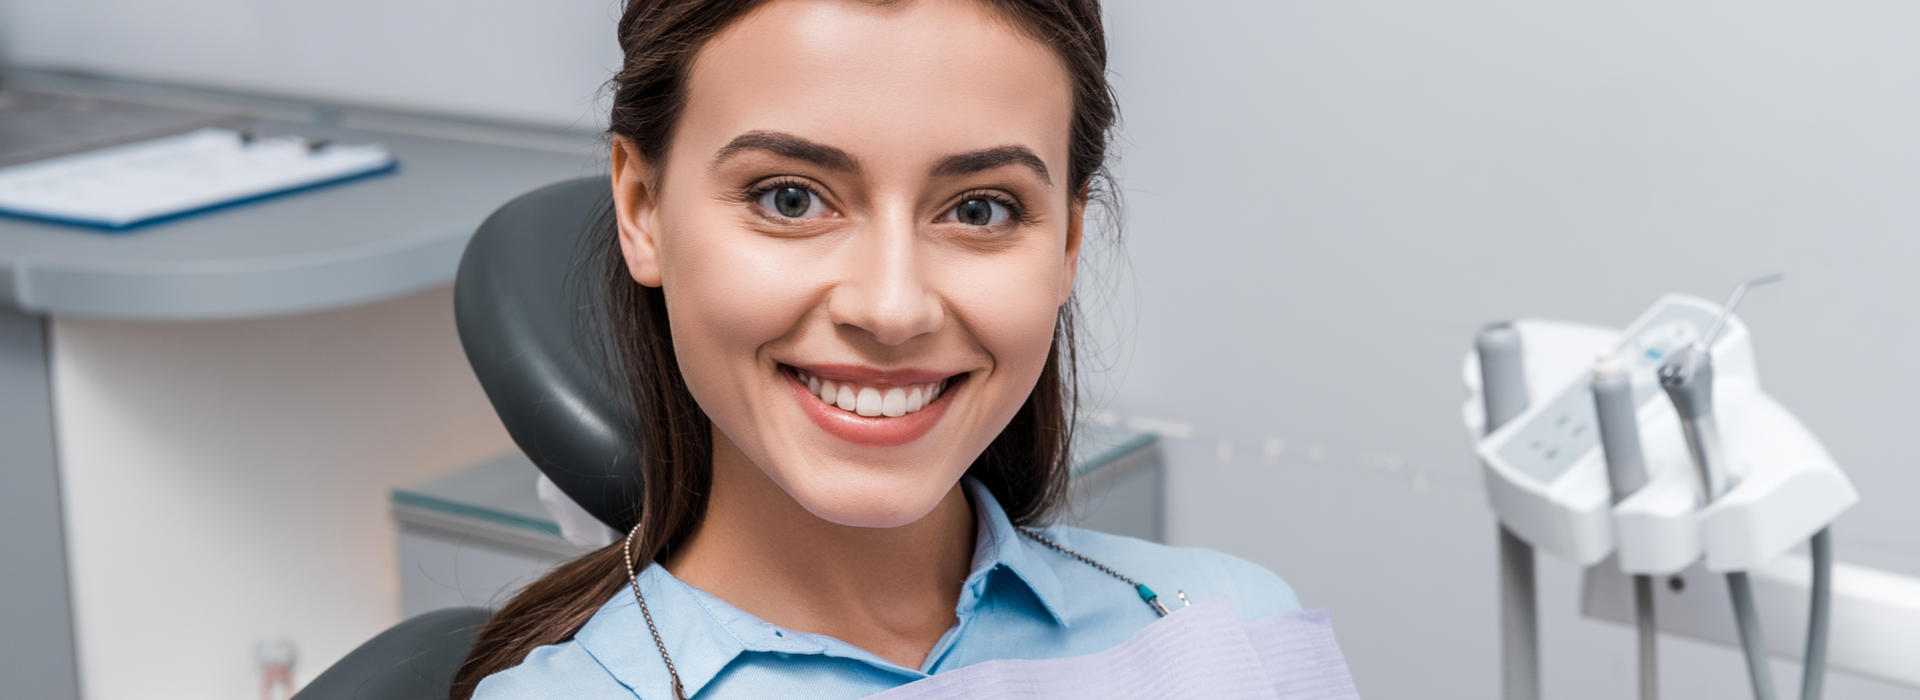 A woman is smiling after dental veneers.